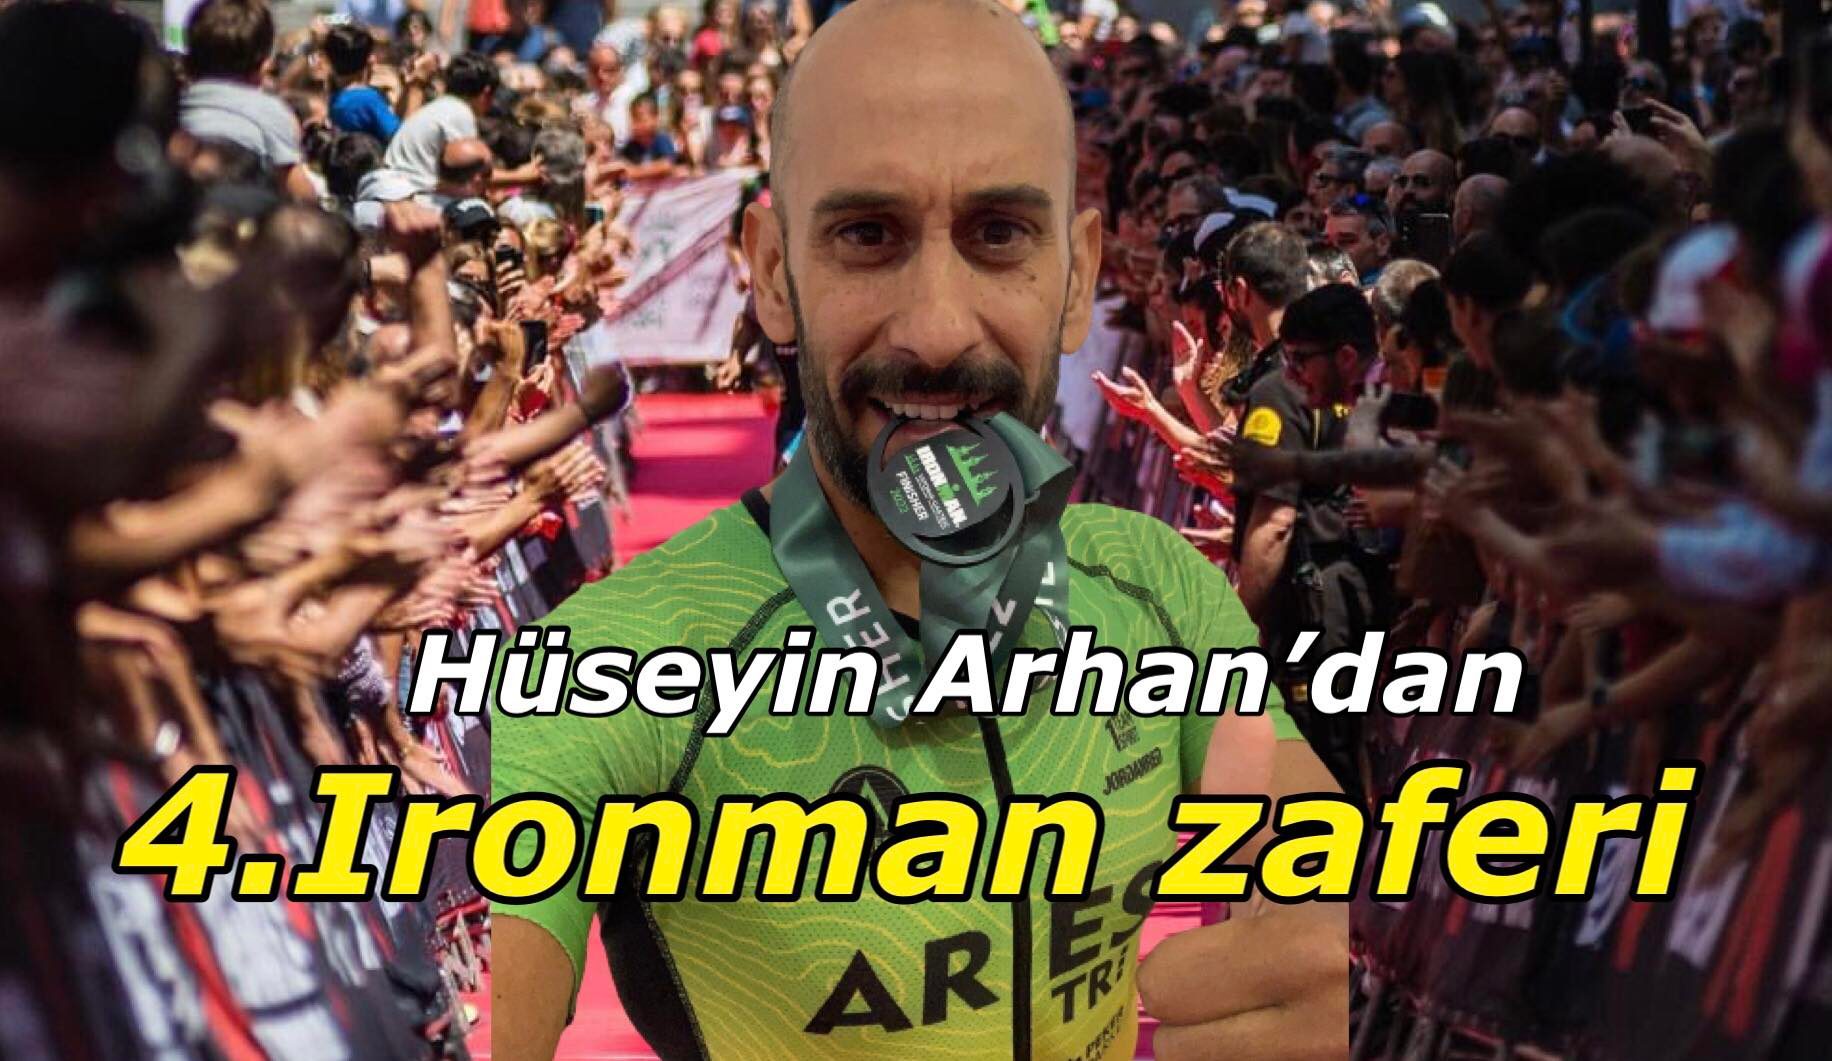 Hüseyin Arhan İspanya Vitoria Gasteiz Ironman yarışında finişe ulaşmayı başararak 4.kez Ironman zaferi yaşadı.